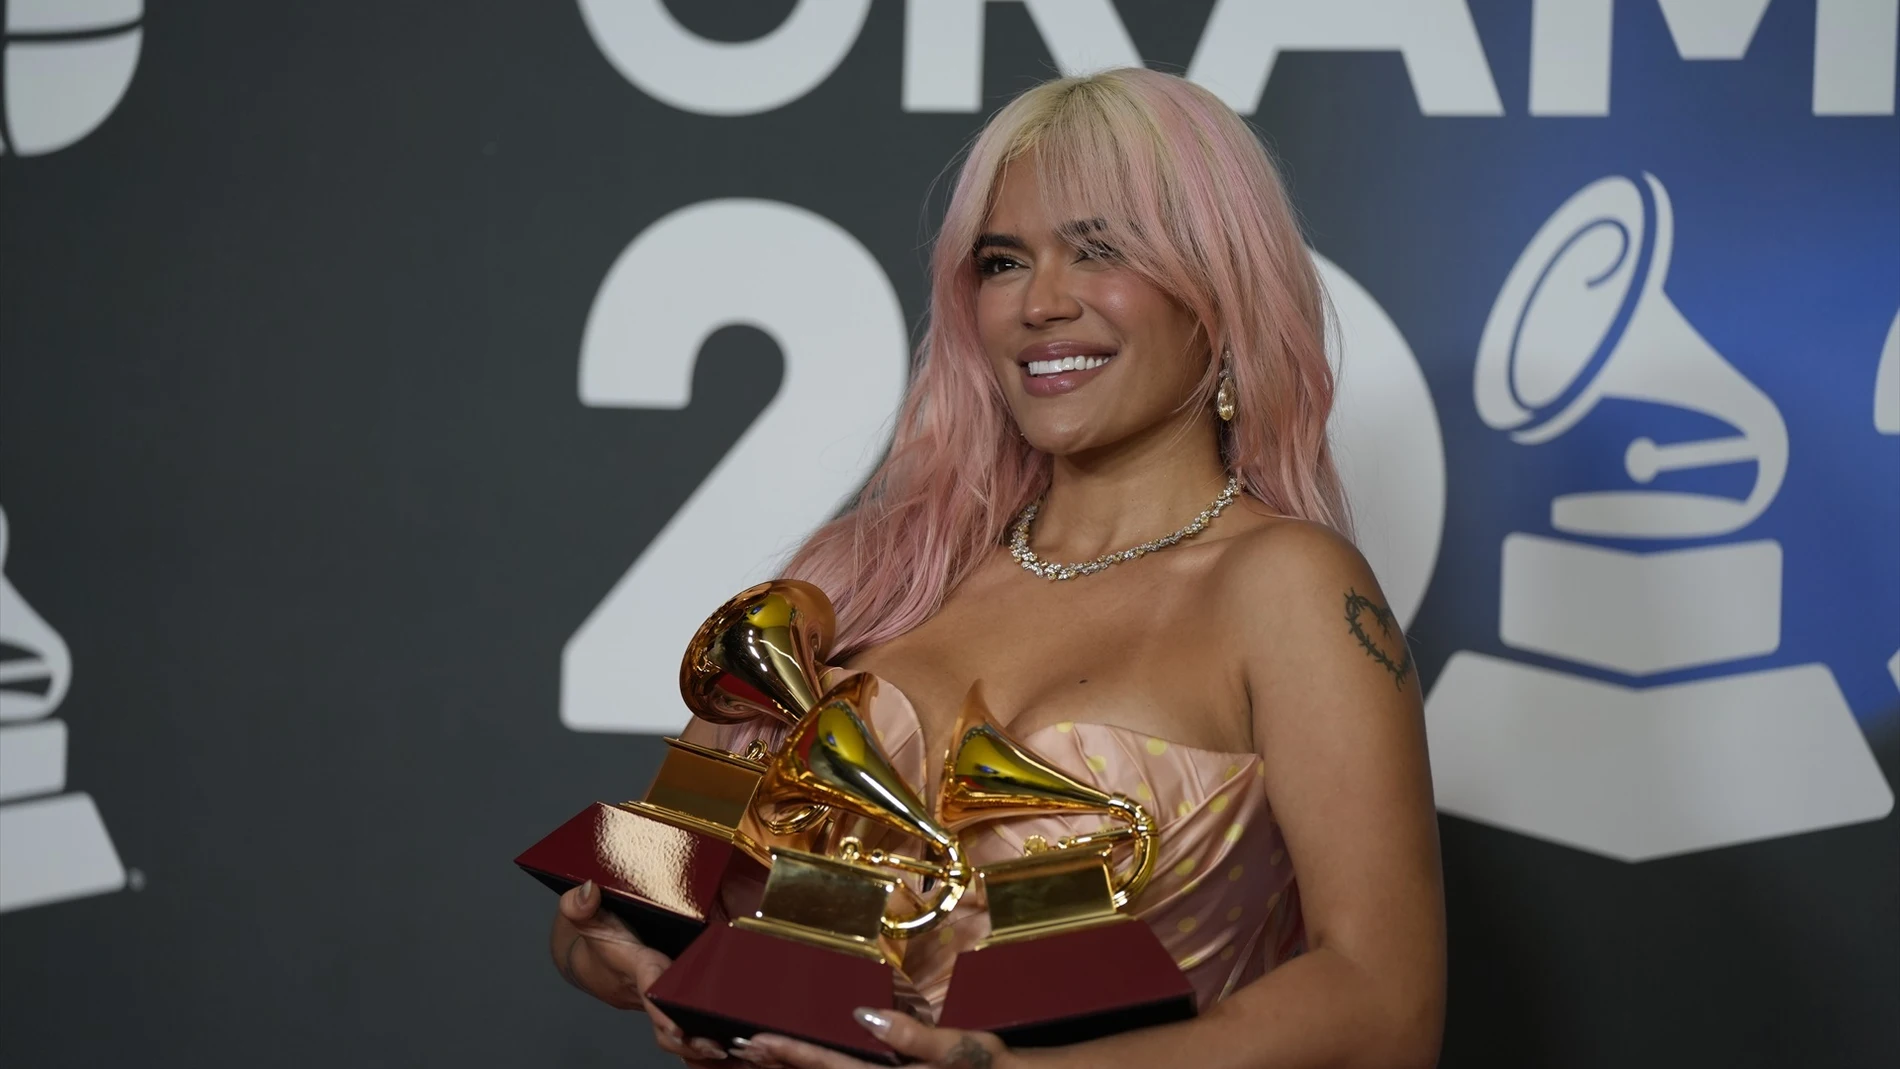 La cantante Karol G, posa con los 3 Grammy que le han sido otorgados durante la gala de entrega de los Latin Grammy 2023, en el Palacio de Congresos de Sevilla, a 16 de noviembre de 2023, en Sevilla, Andalucía (España).